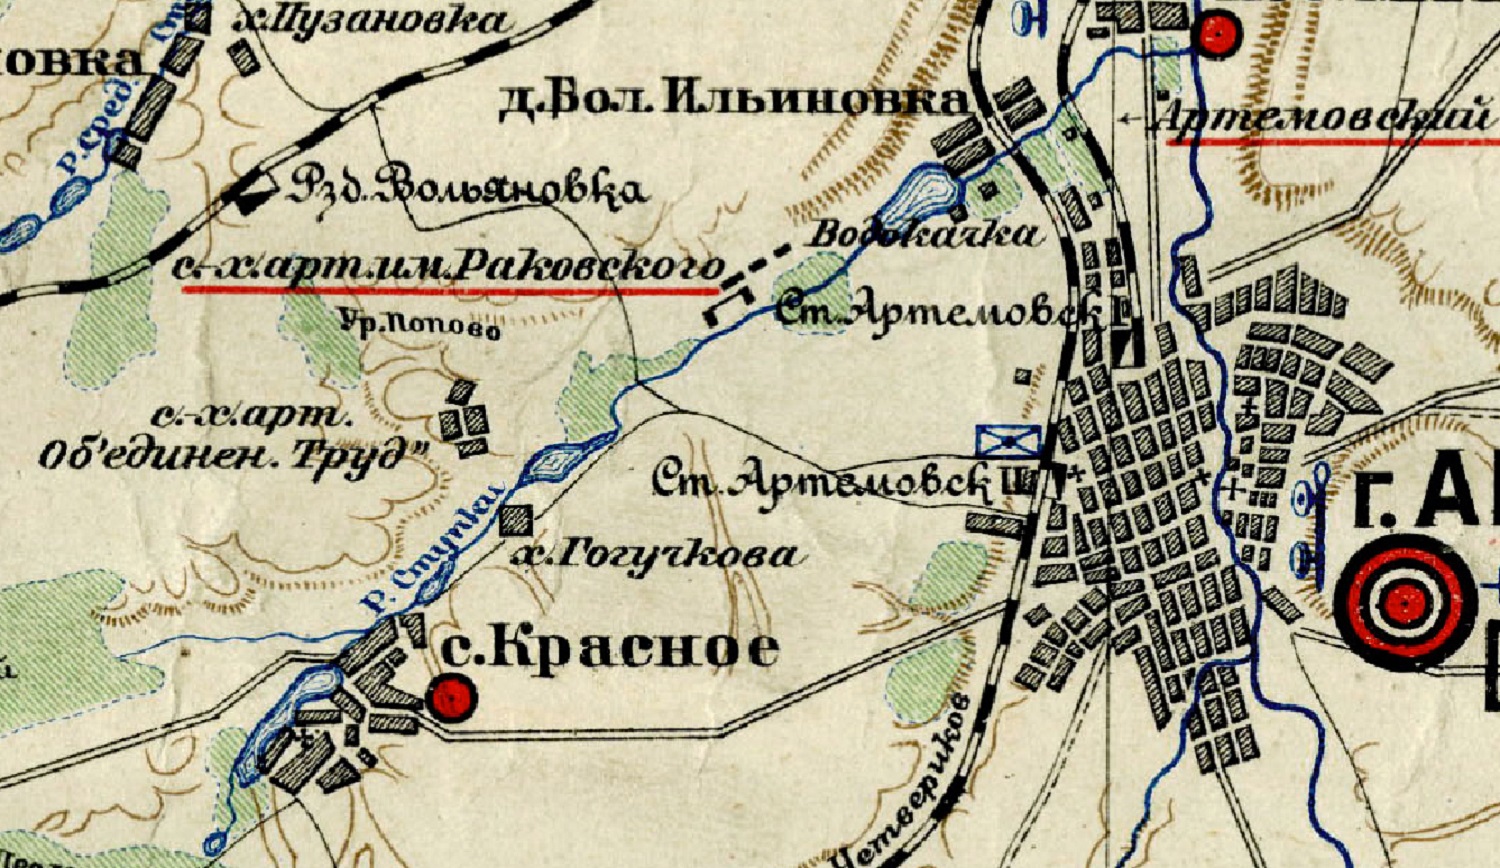 Мапа околиць уже перейменованого Артемівська у 1920-х роках